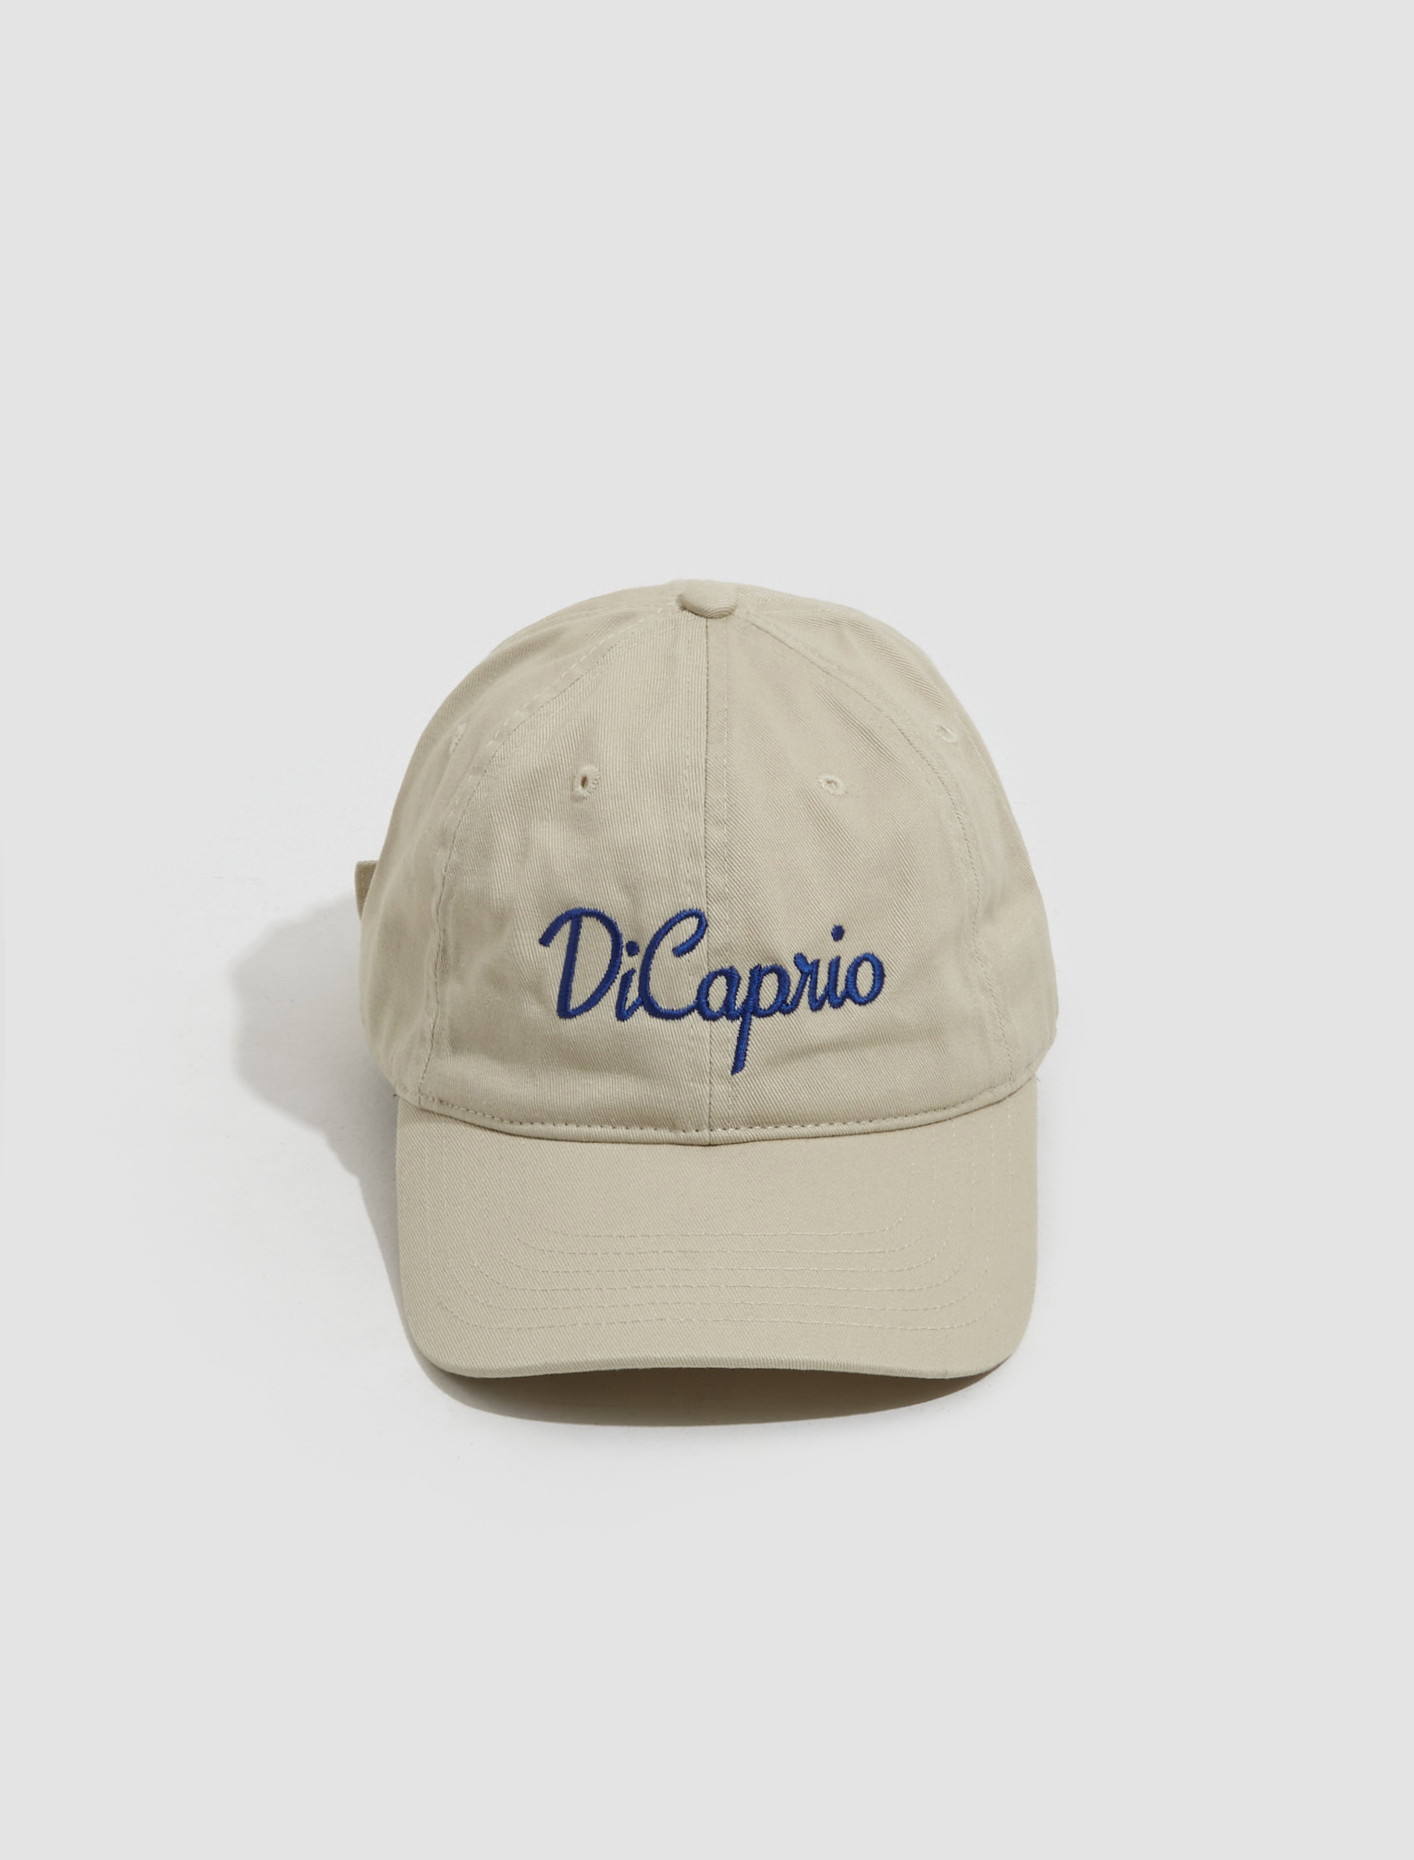 DiCaprio Cap in Beige